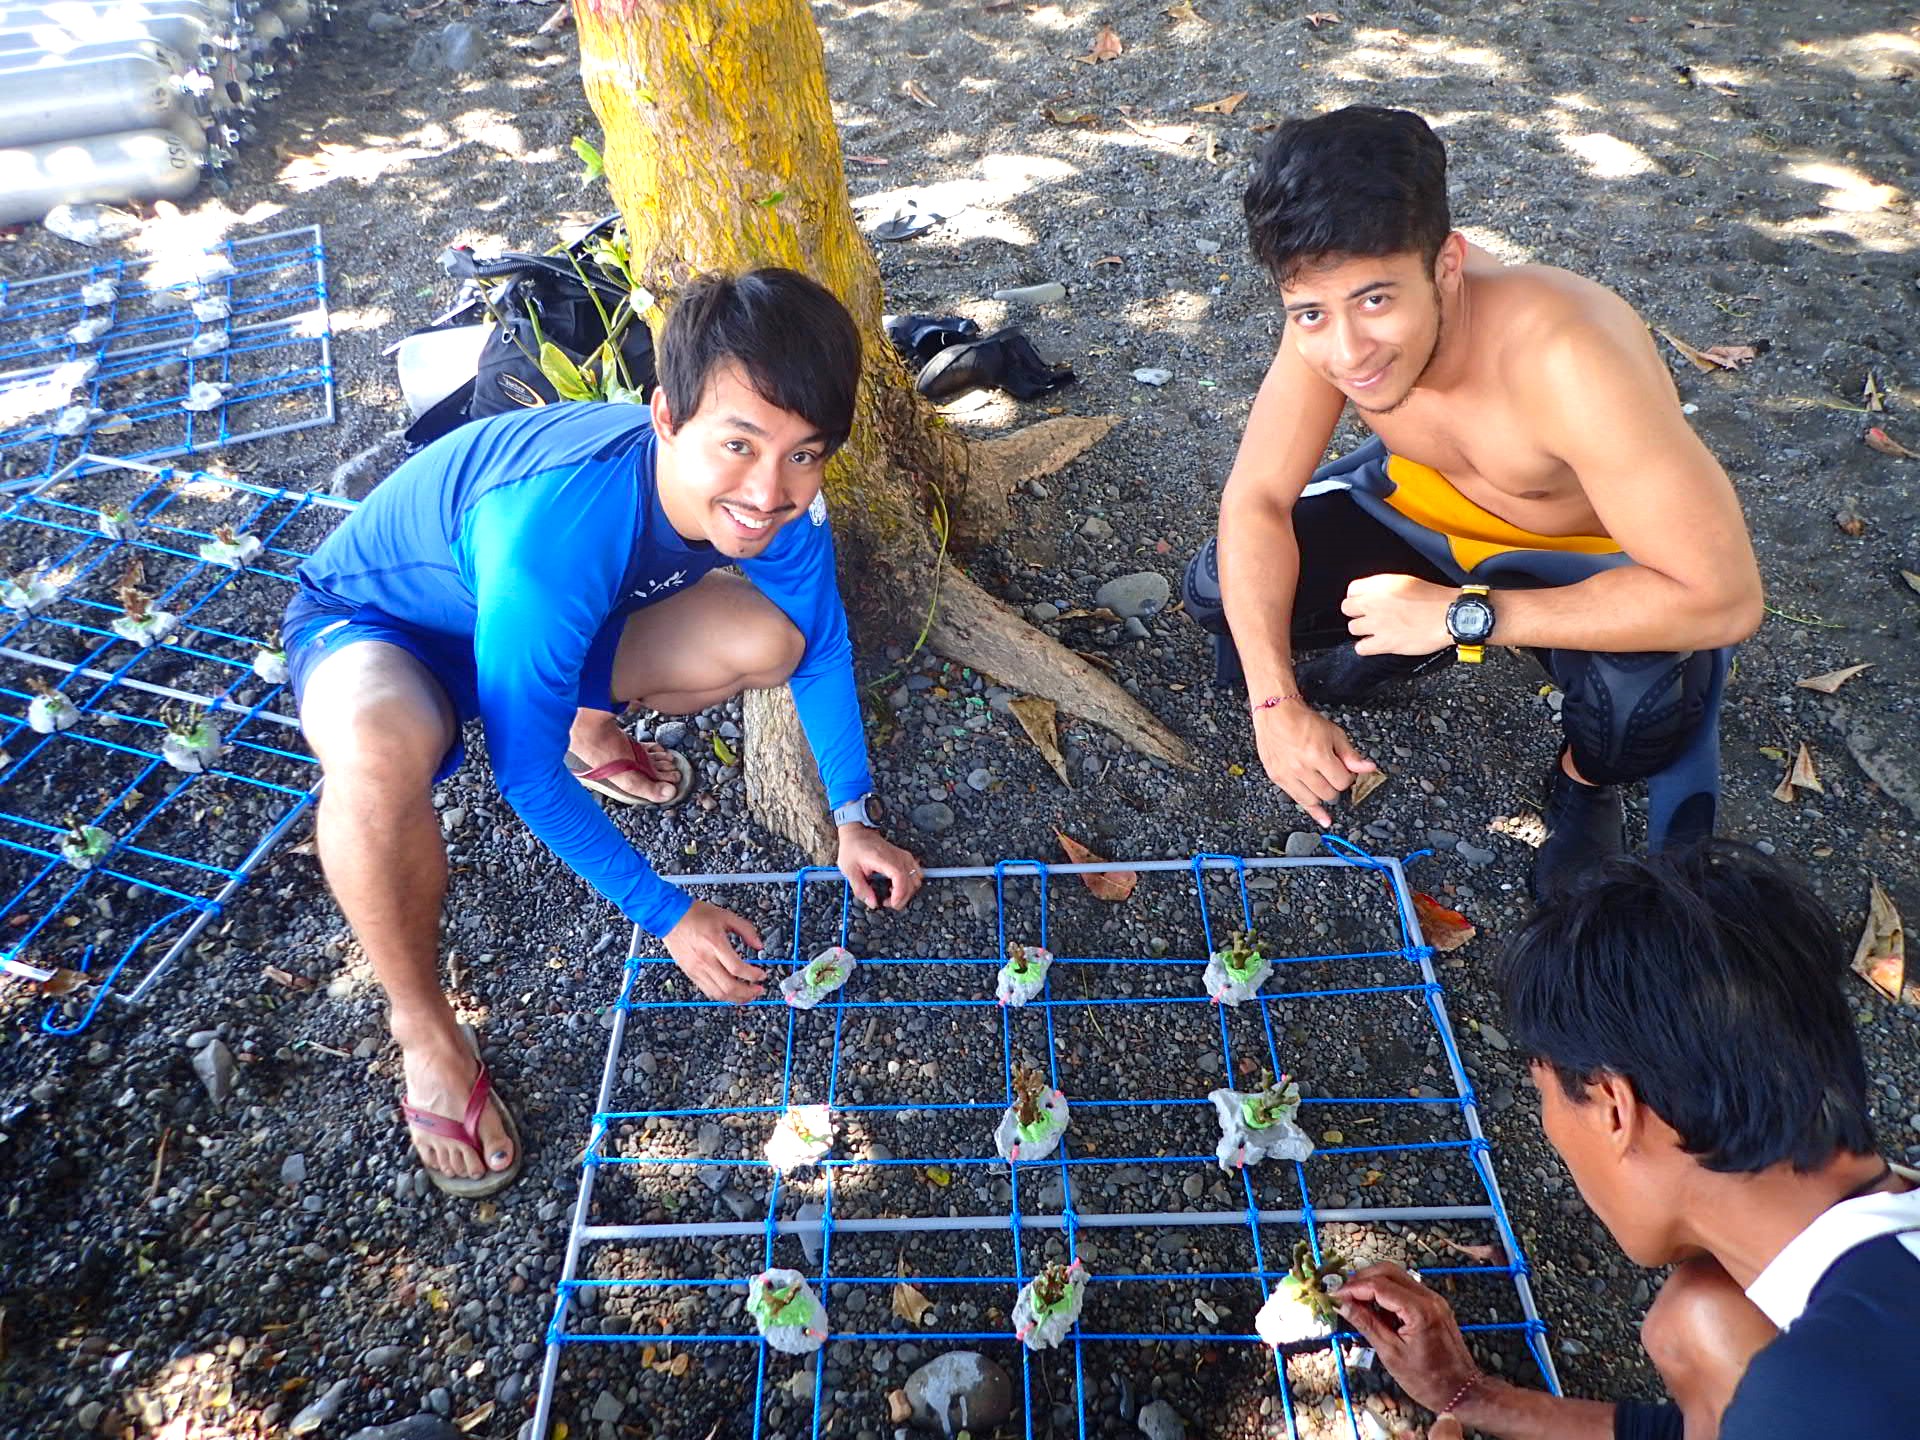 นักวิทยาศาสตร์ชุมชนทะเลวางท่าเคียงข้างการปลูกถ่ายปะการัง